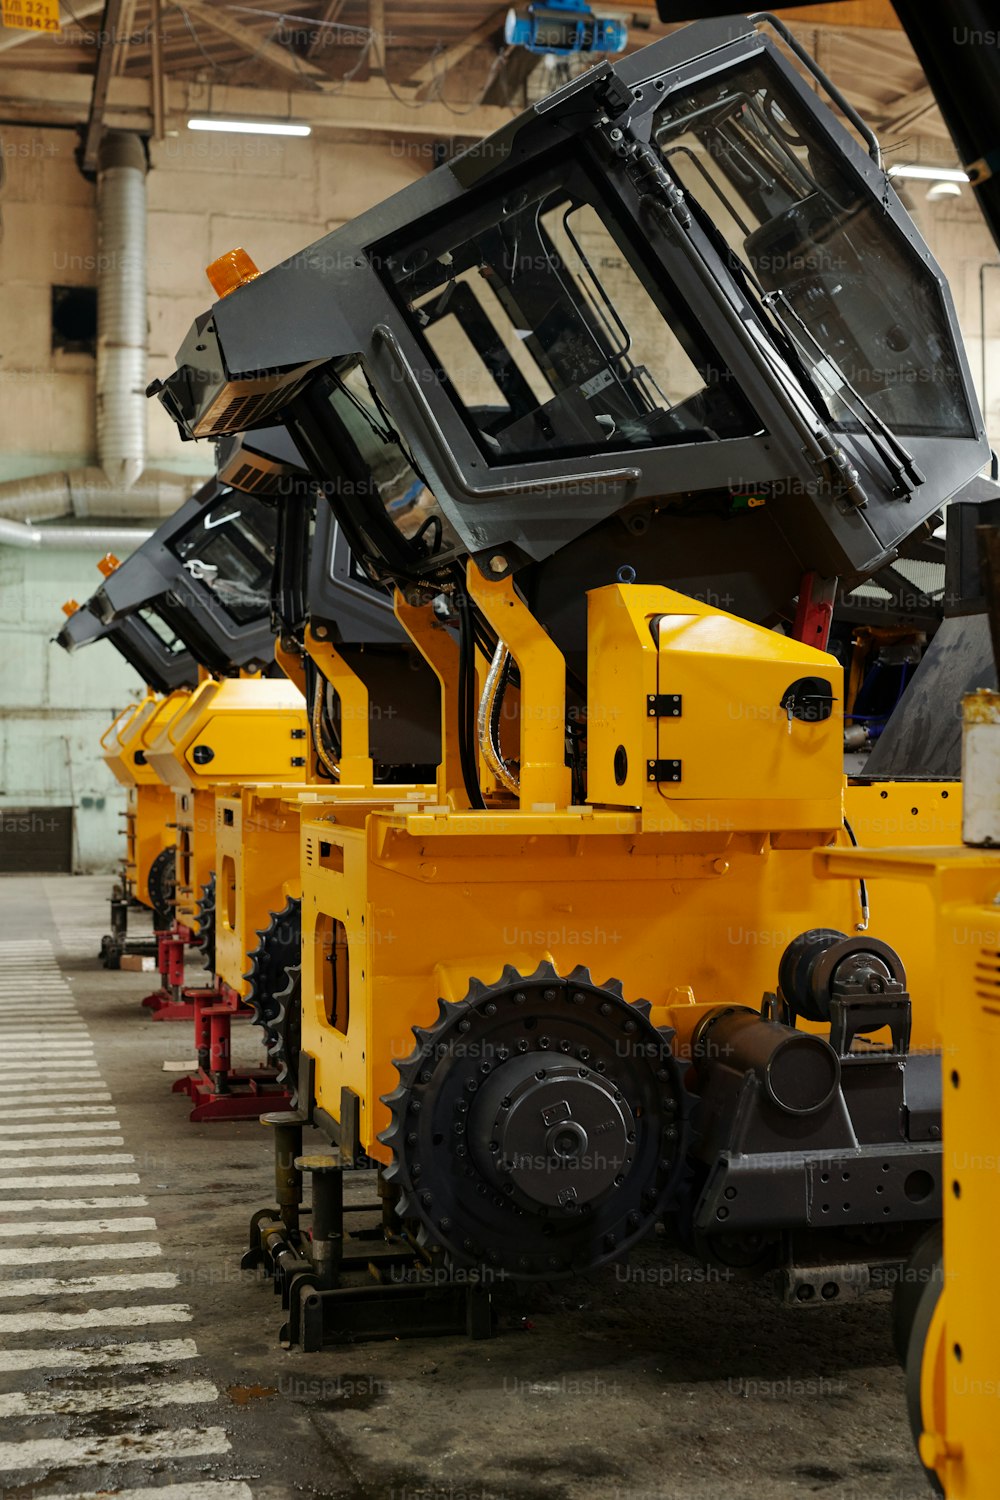 Varias máquinas de construcción enormes de color amarillo colocadas en fila sobre el piso de concreto del sótano, almacén o taller